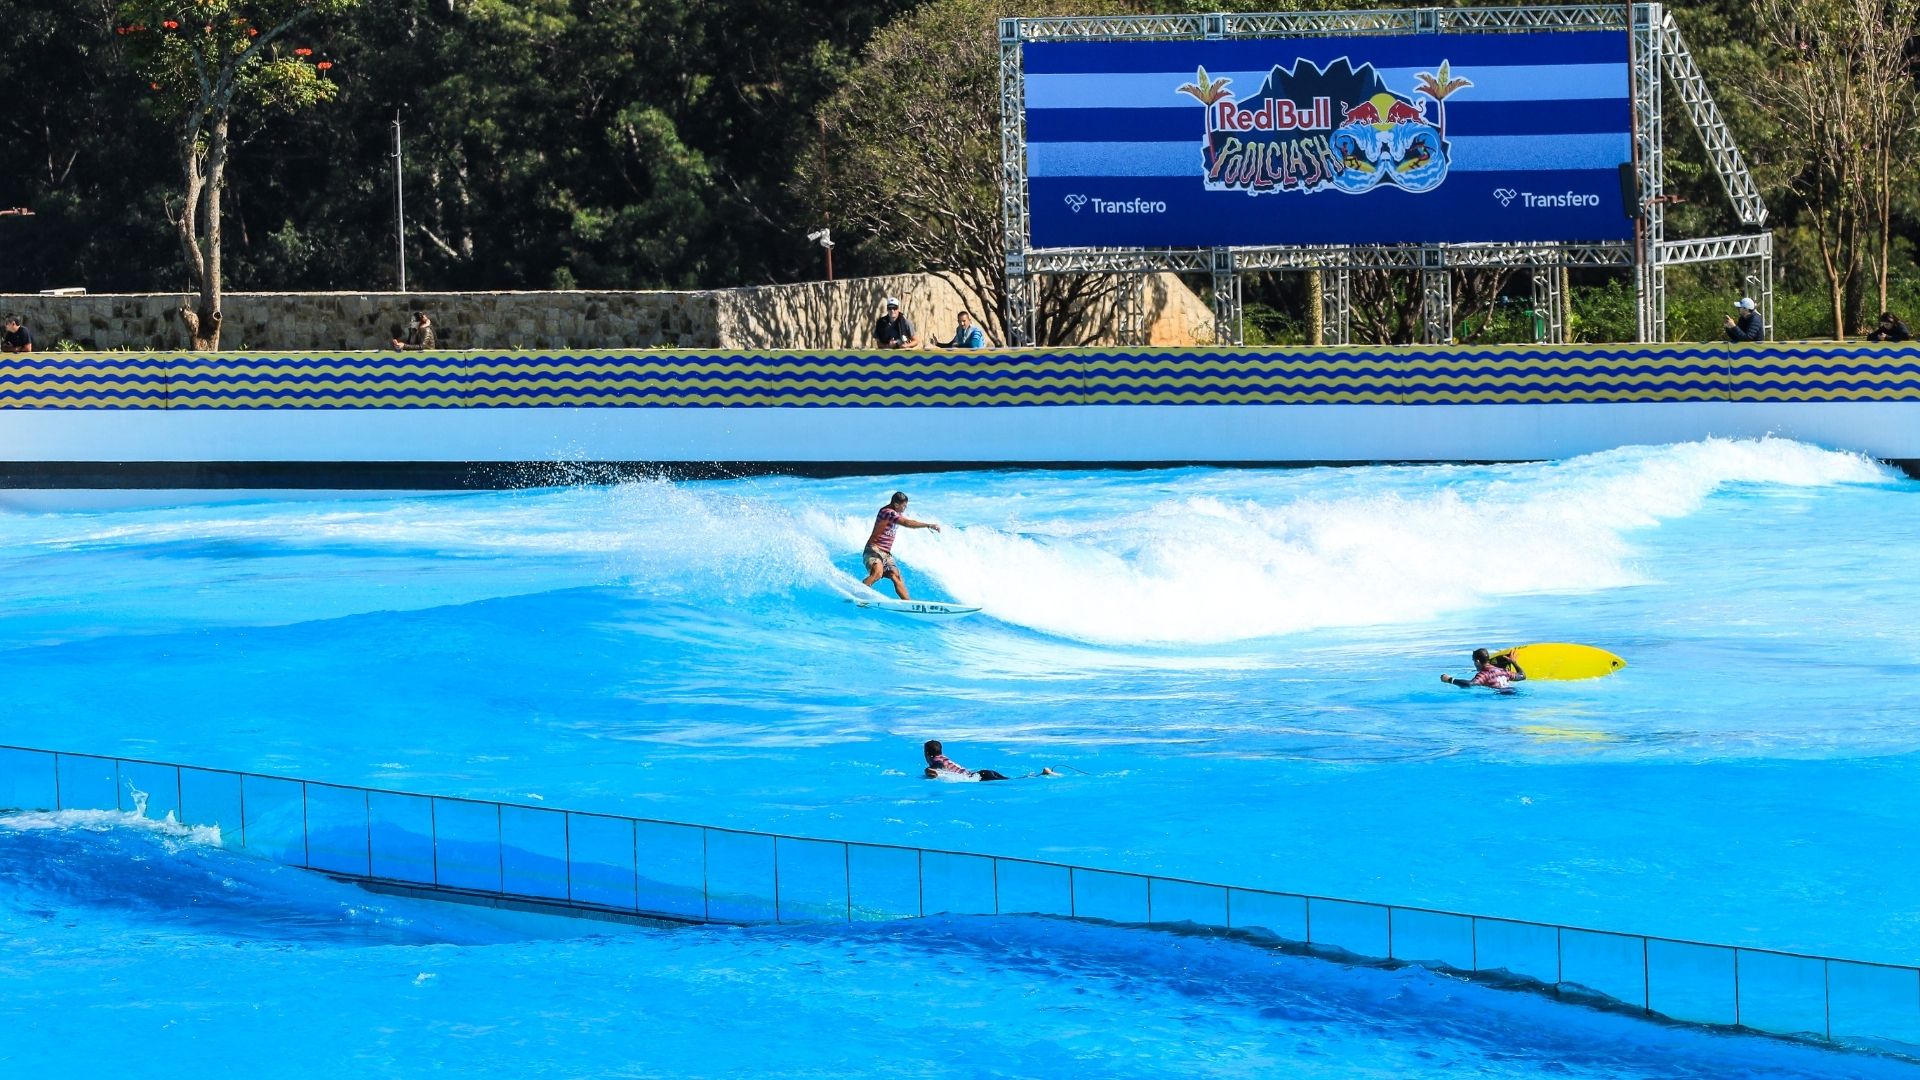 Red Bull realiza torneio em piscina de ondas